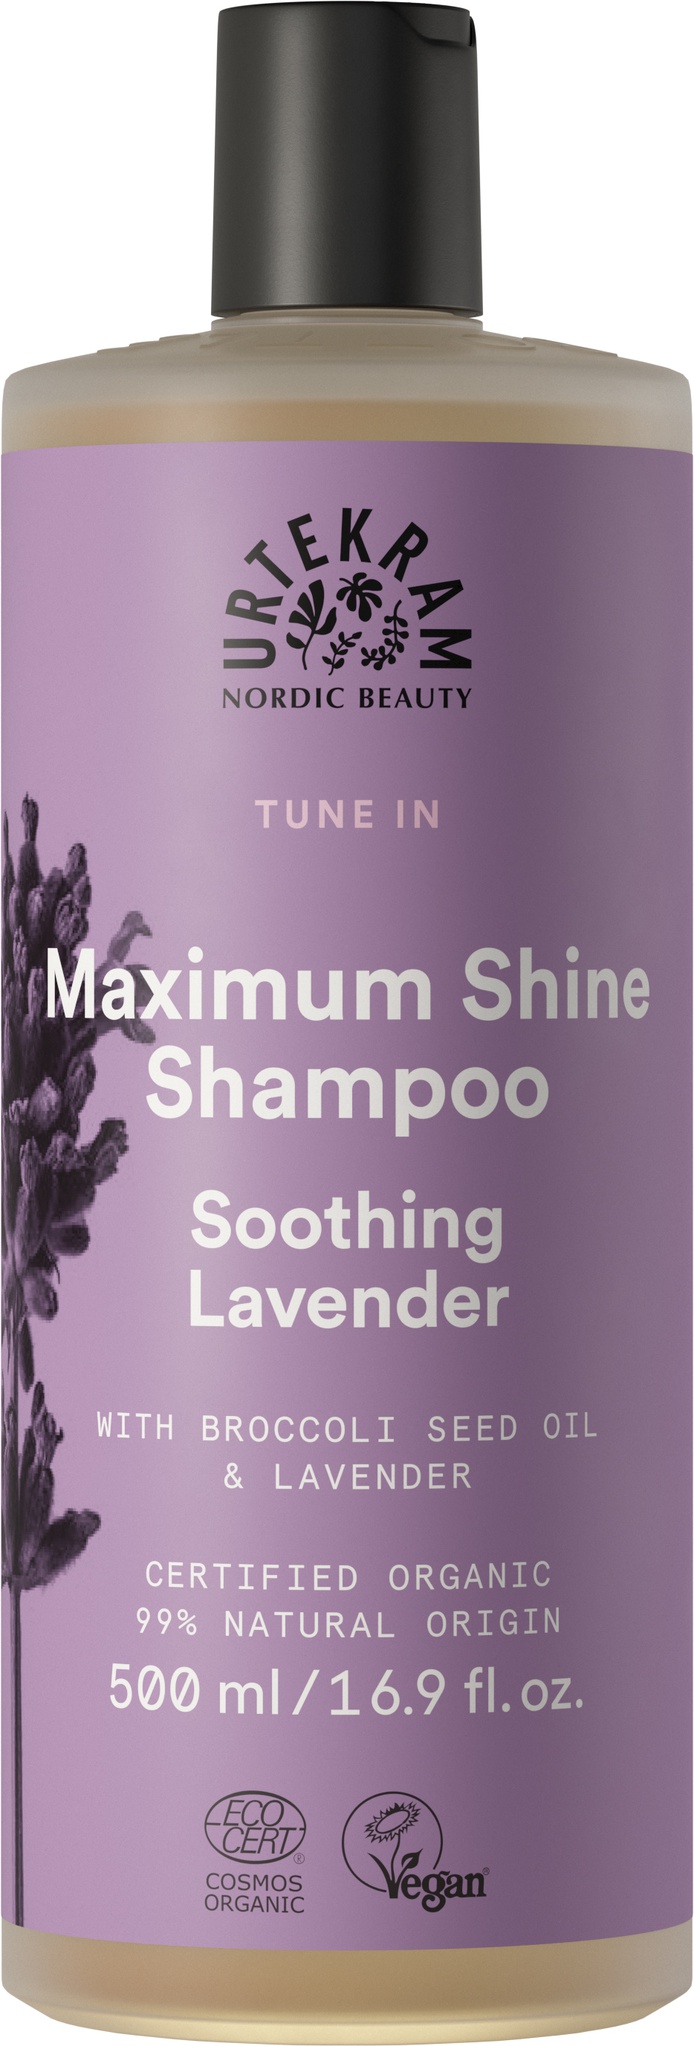 Urtekram Soothing Lavender Maximum Shine Shampoo